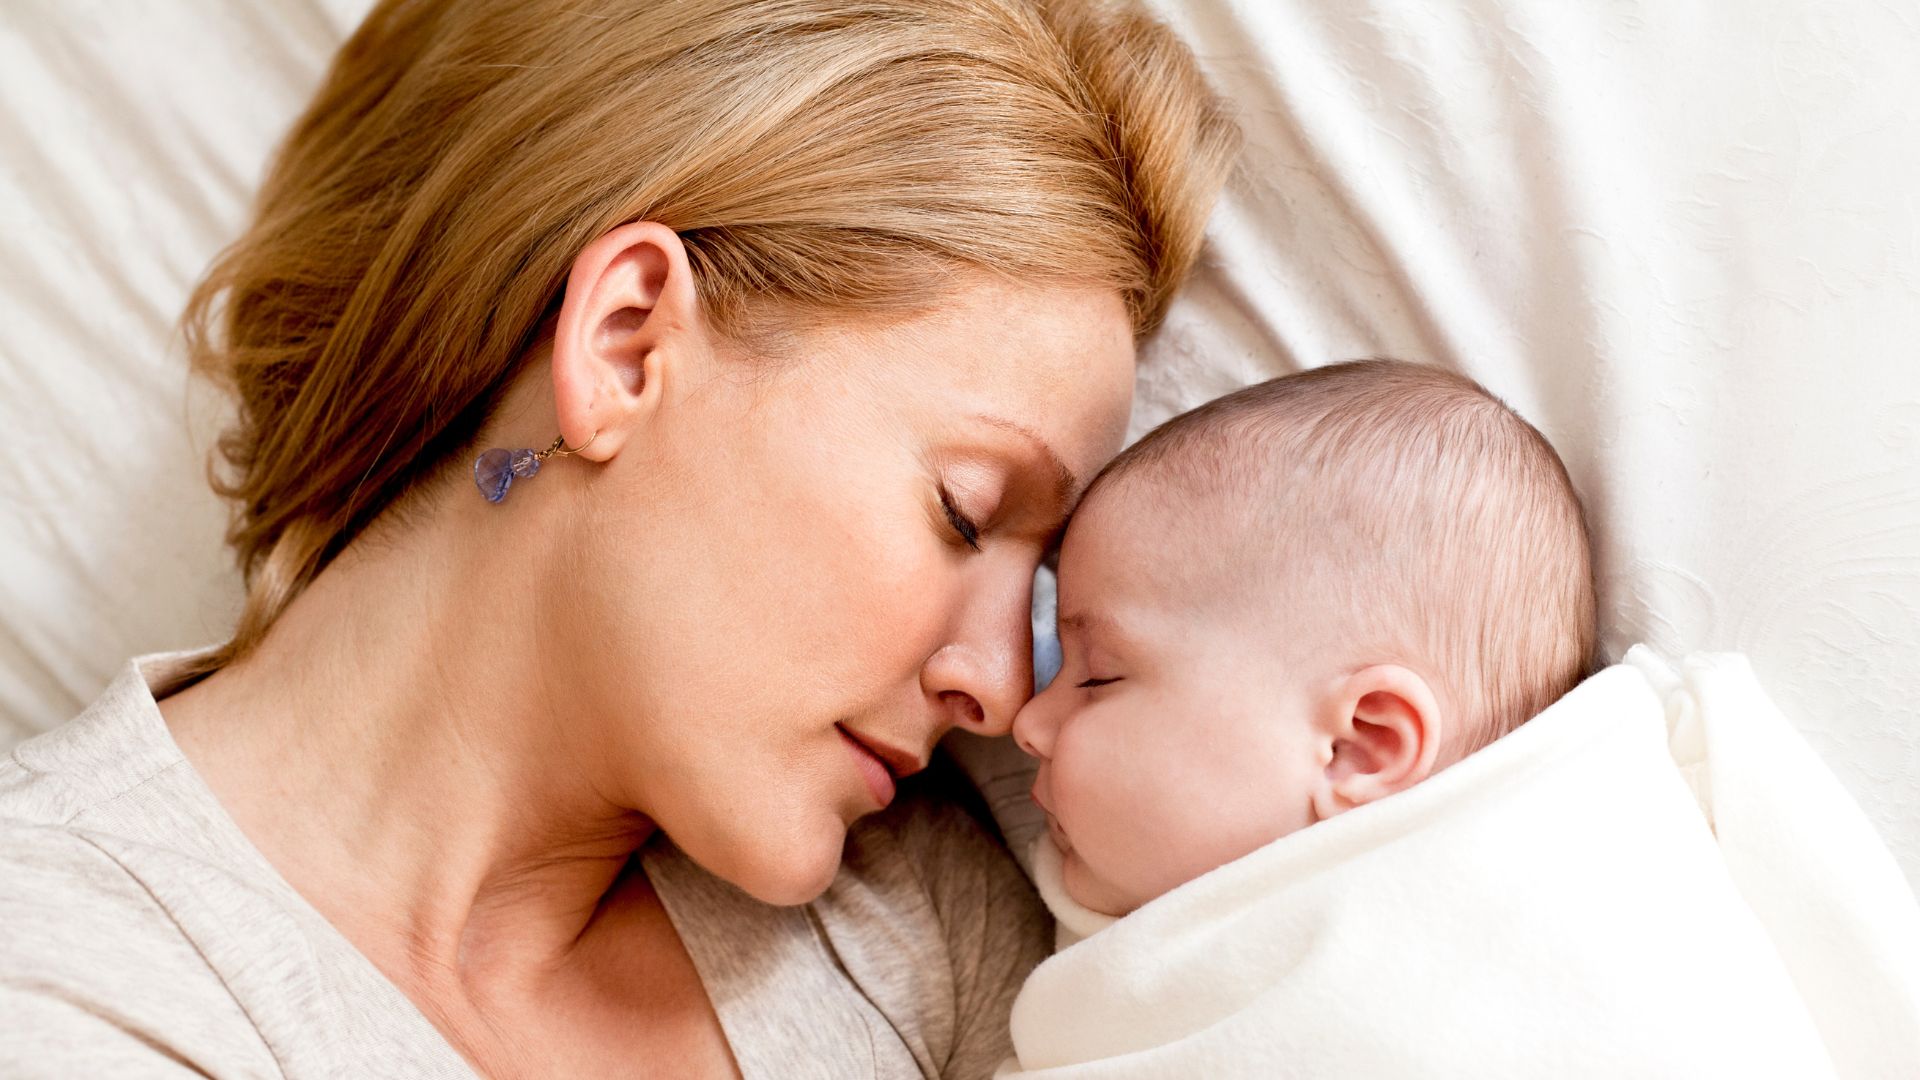 Uma mulher branca de cabelos loiros encostando sua cabeça na cabeça de um pequeno bebê.